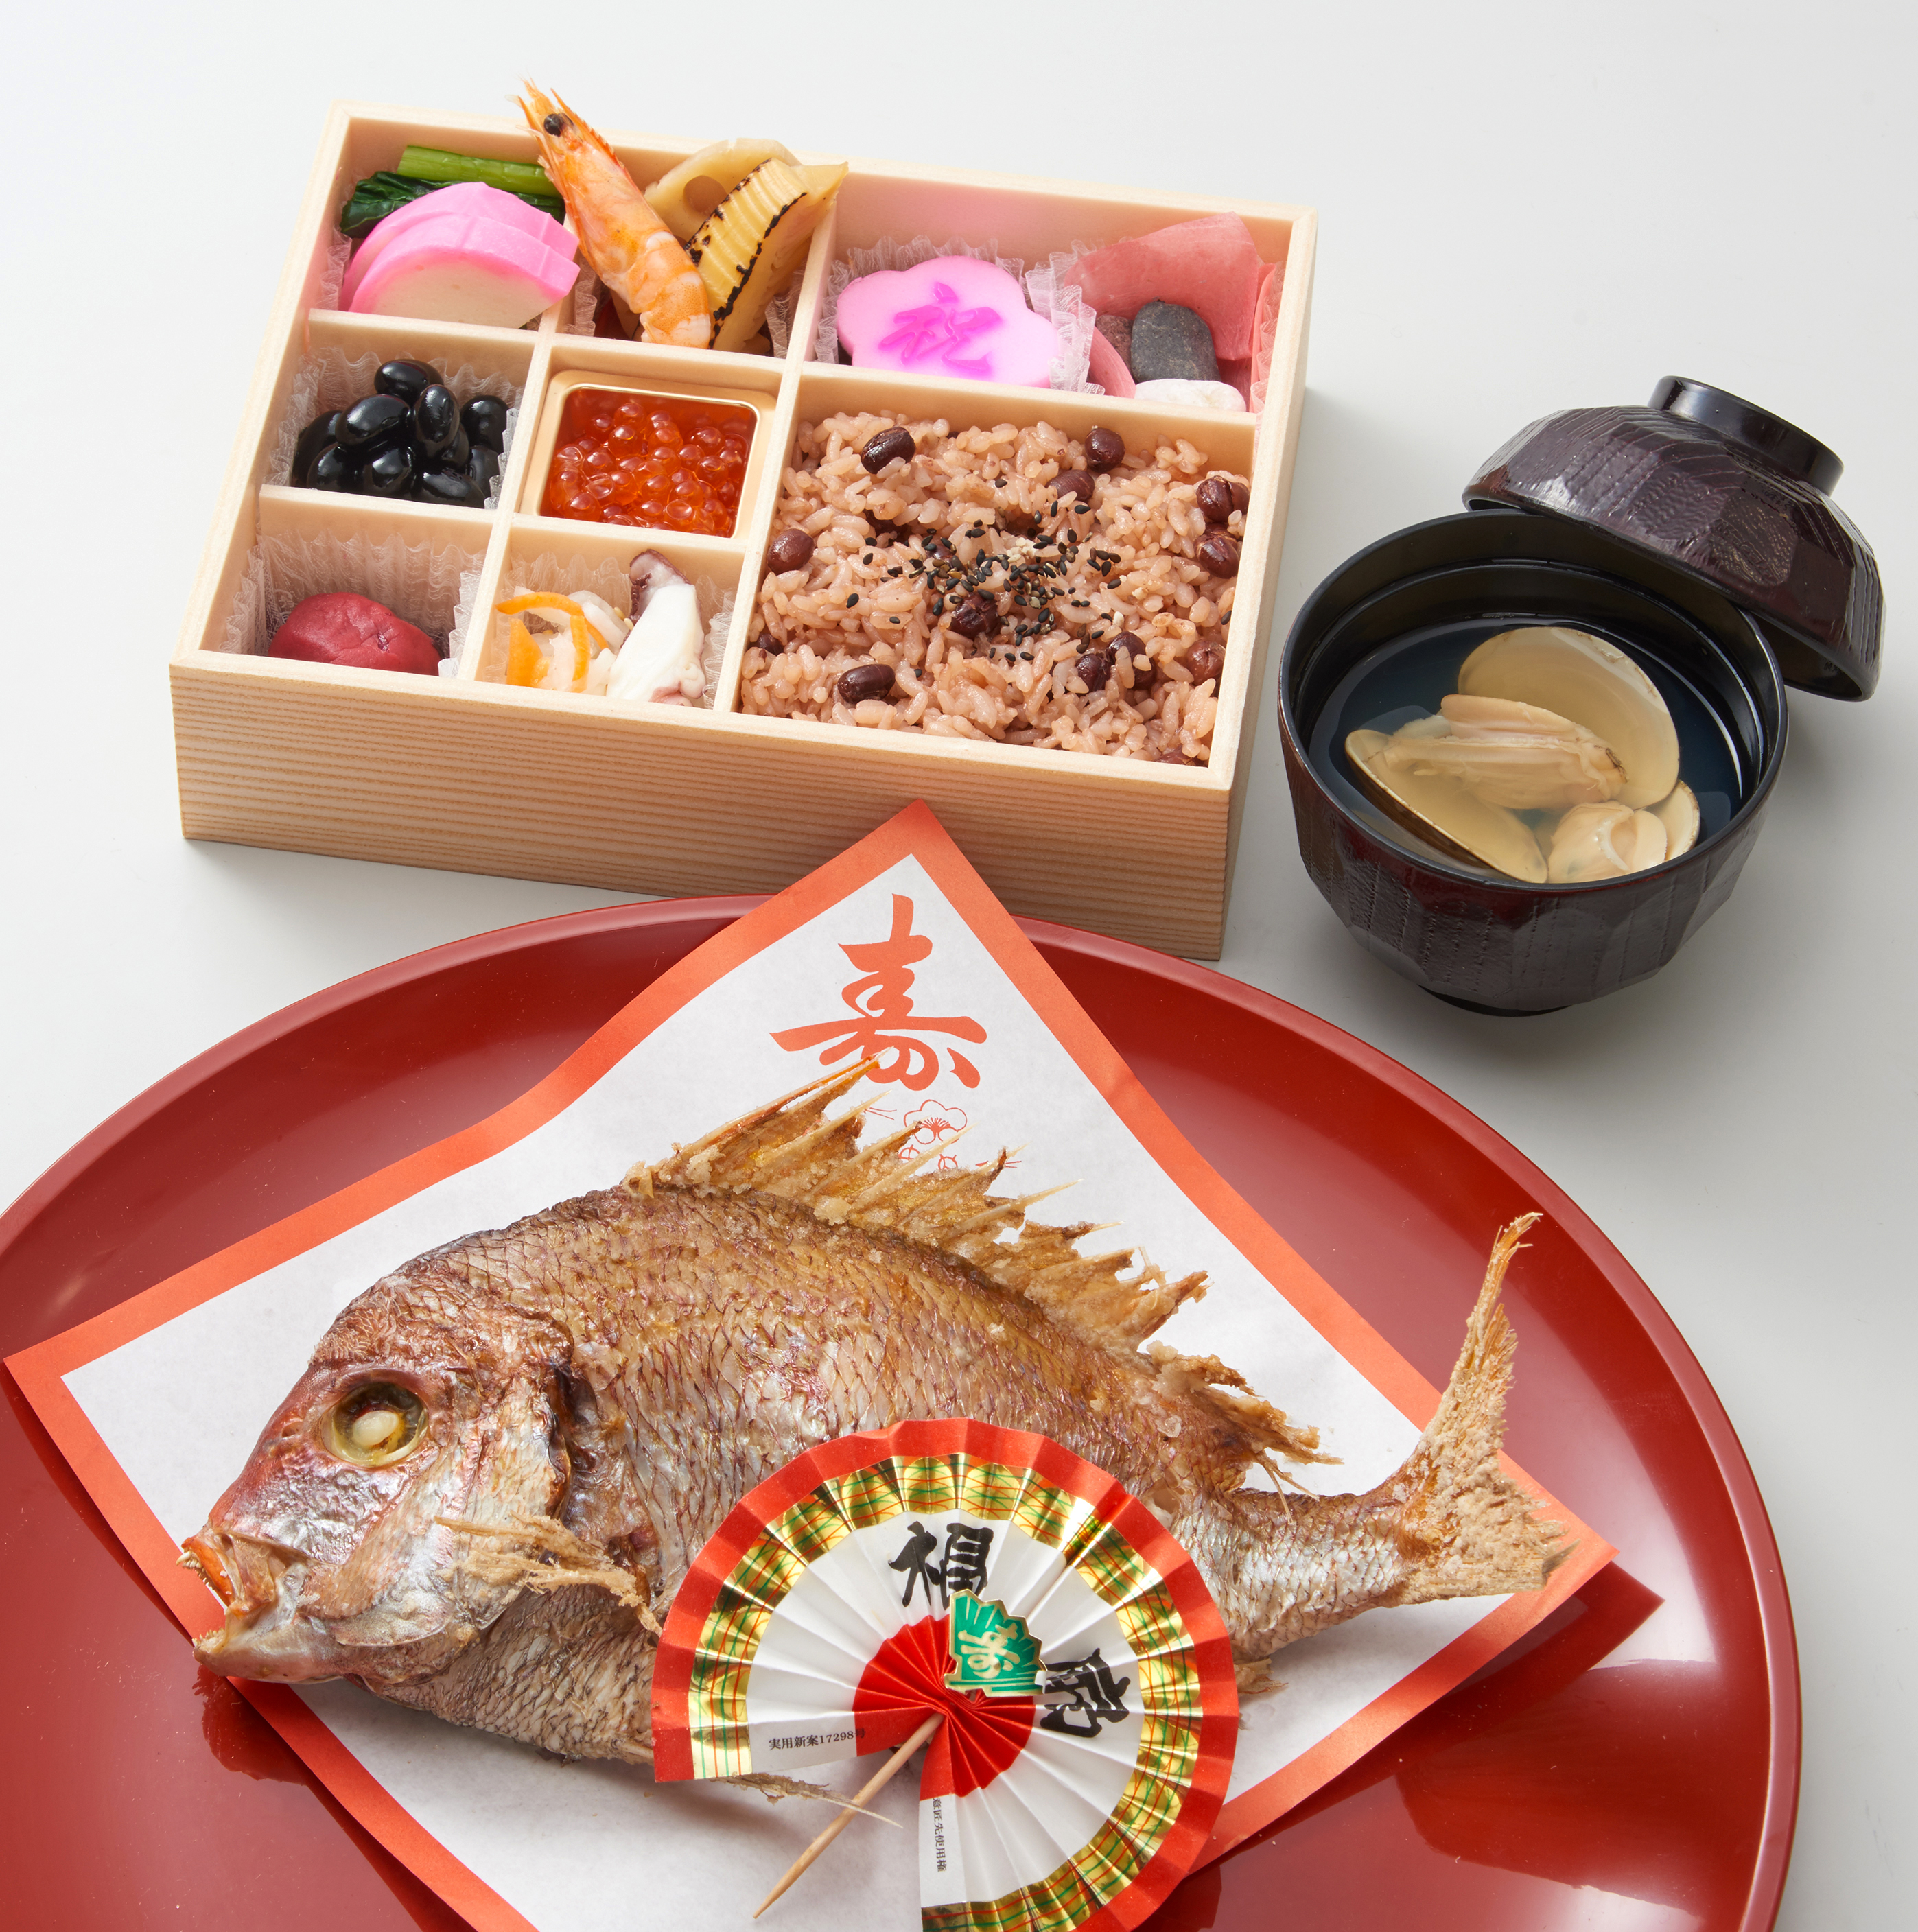 115 お食い初め膳 鯛 吸い物付き 飯塚 田川の筑豊で弁当 仕出し オードブルの宅配なら華三楽